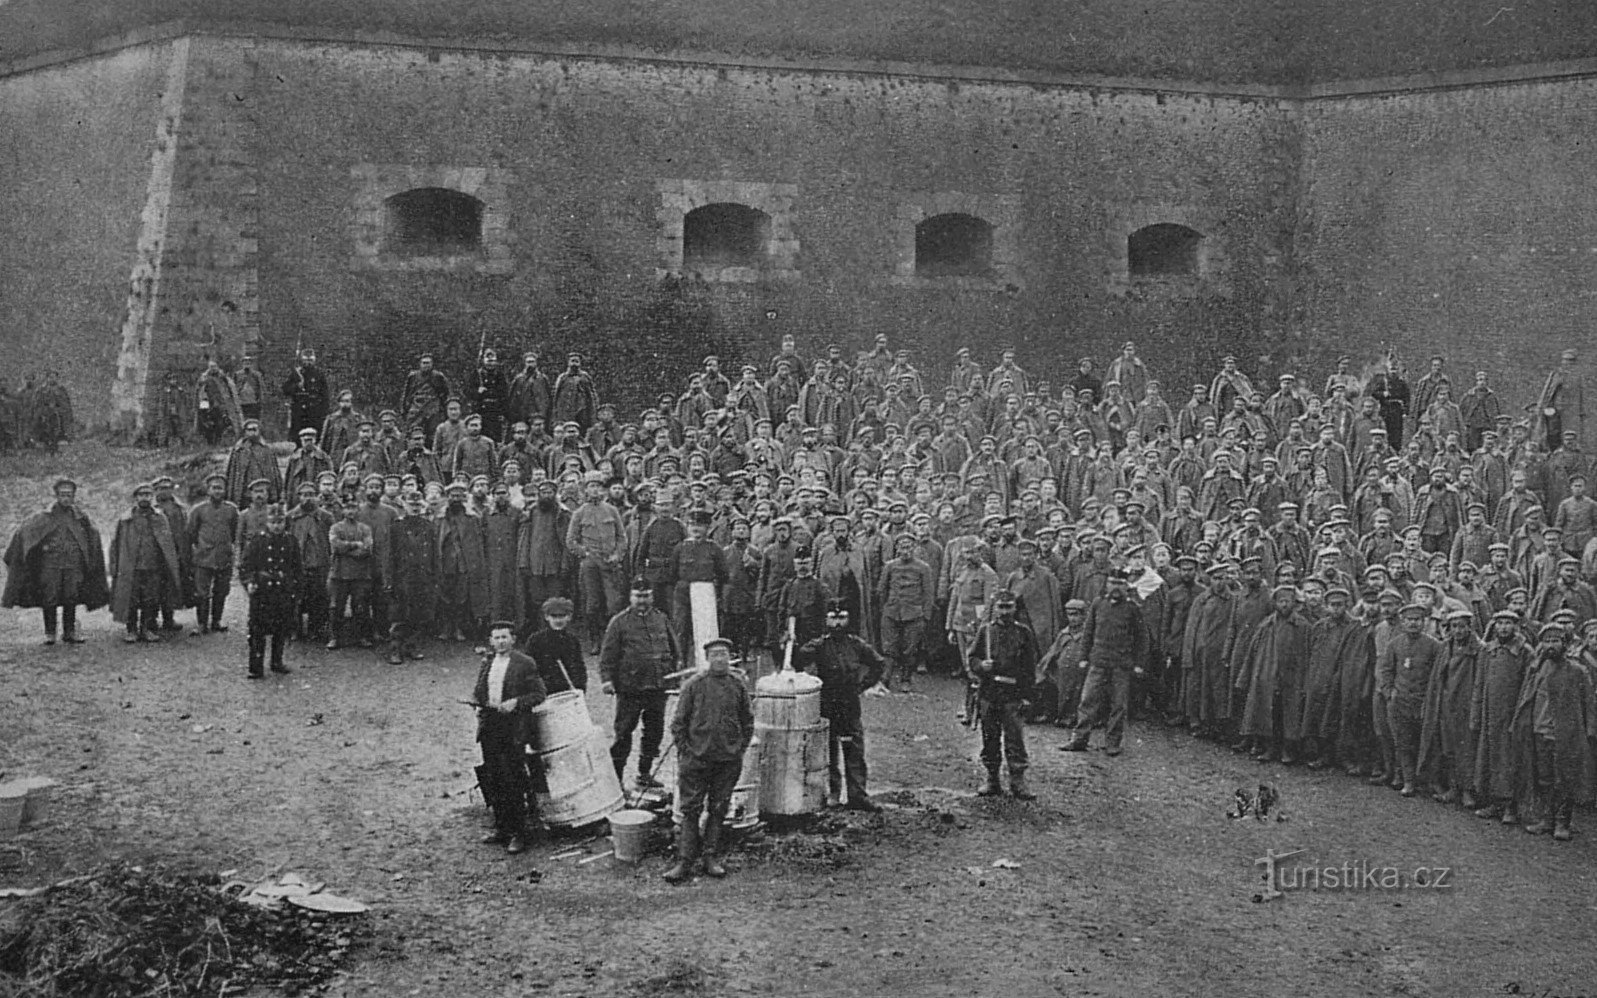 Pierwsi żołnierze rosyjscy do niewoli w Josefowie (1914)